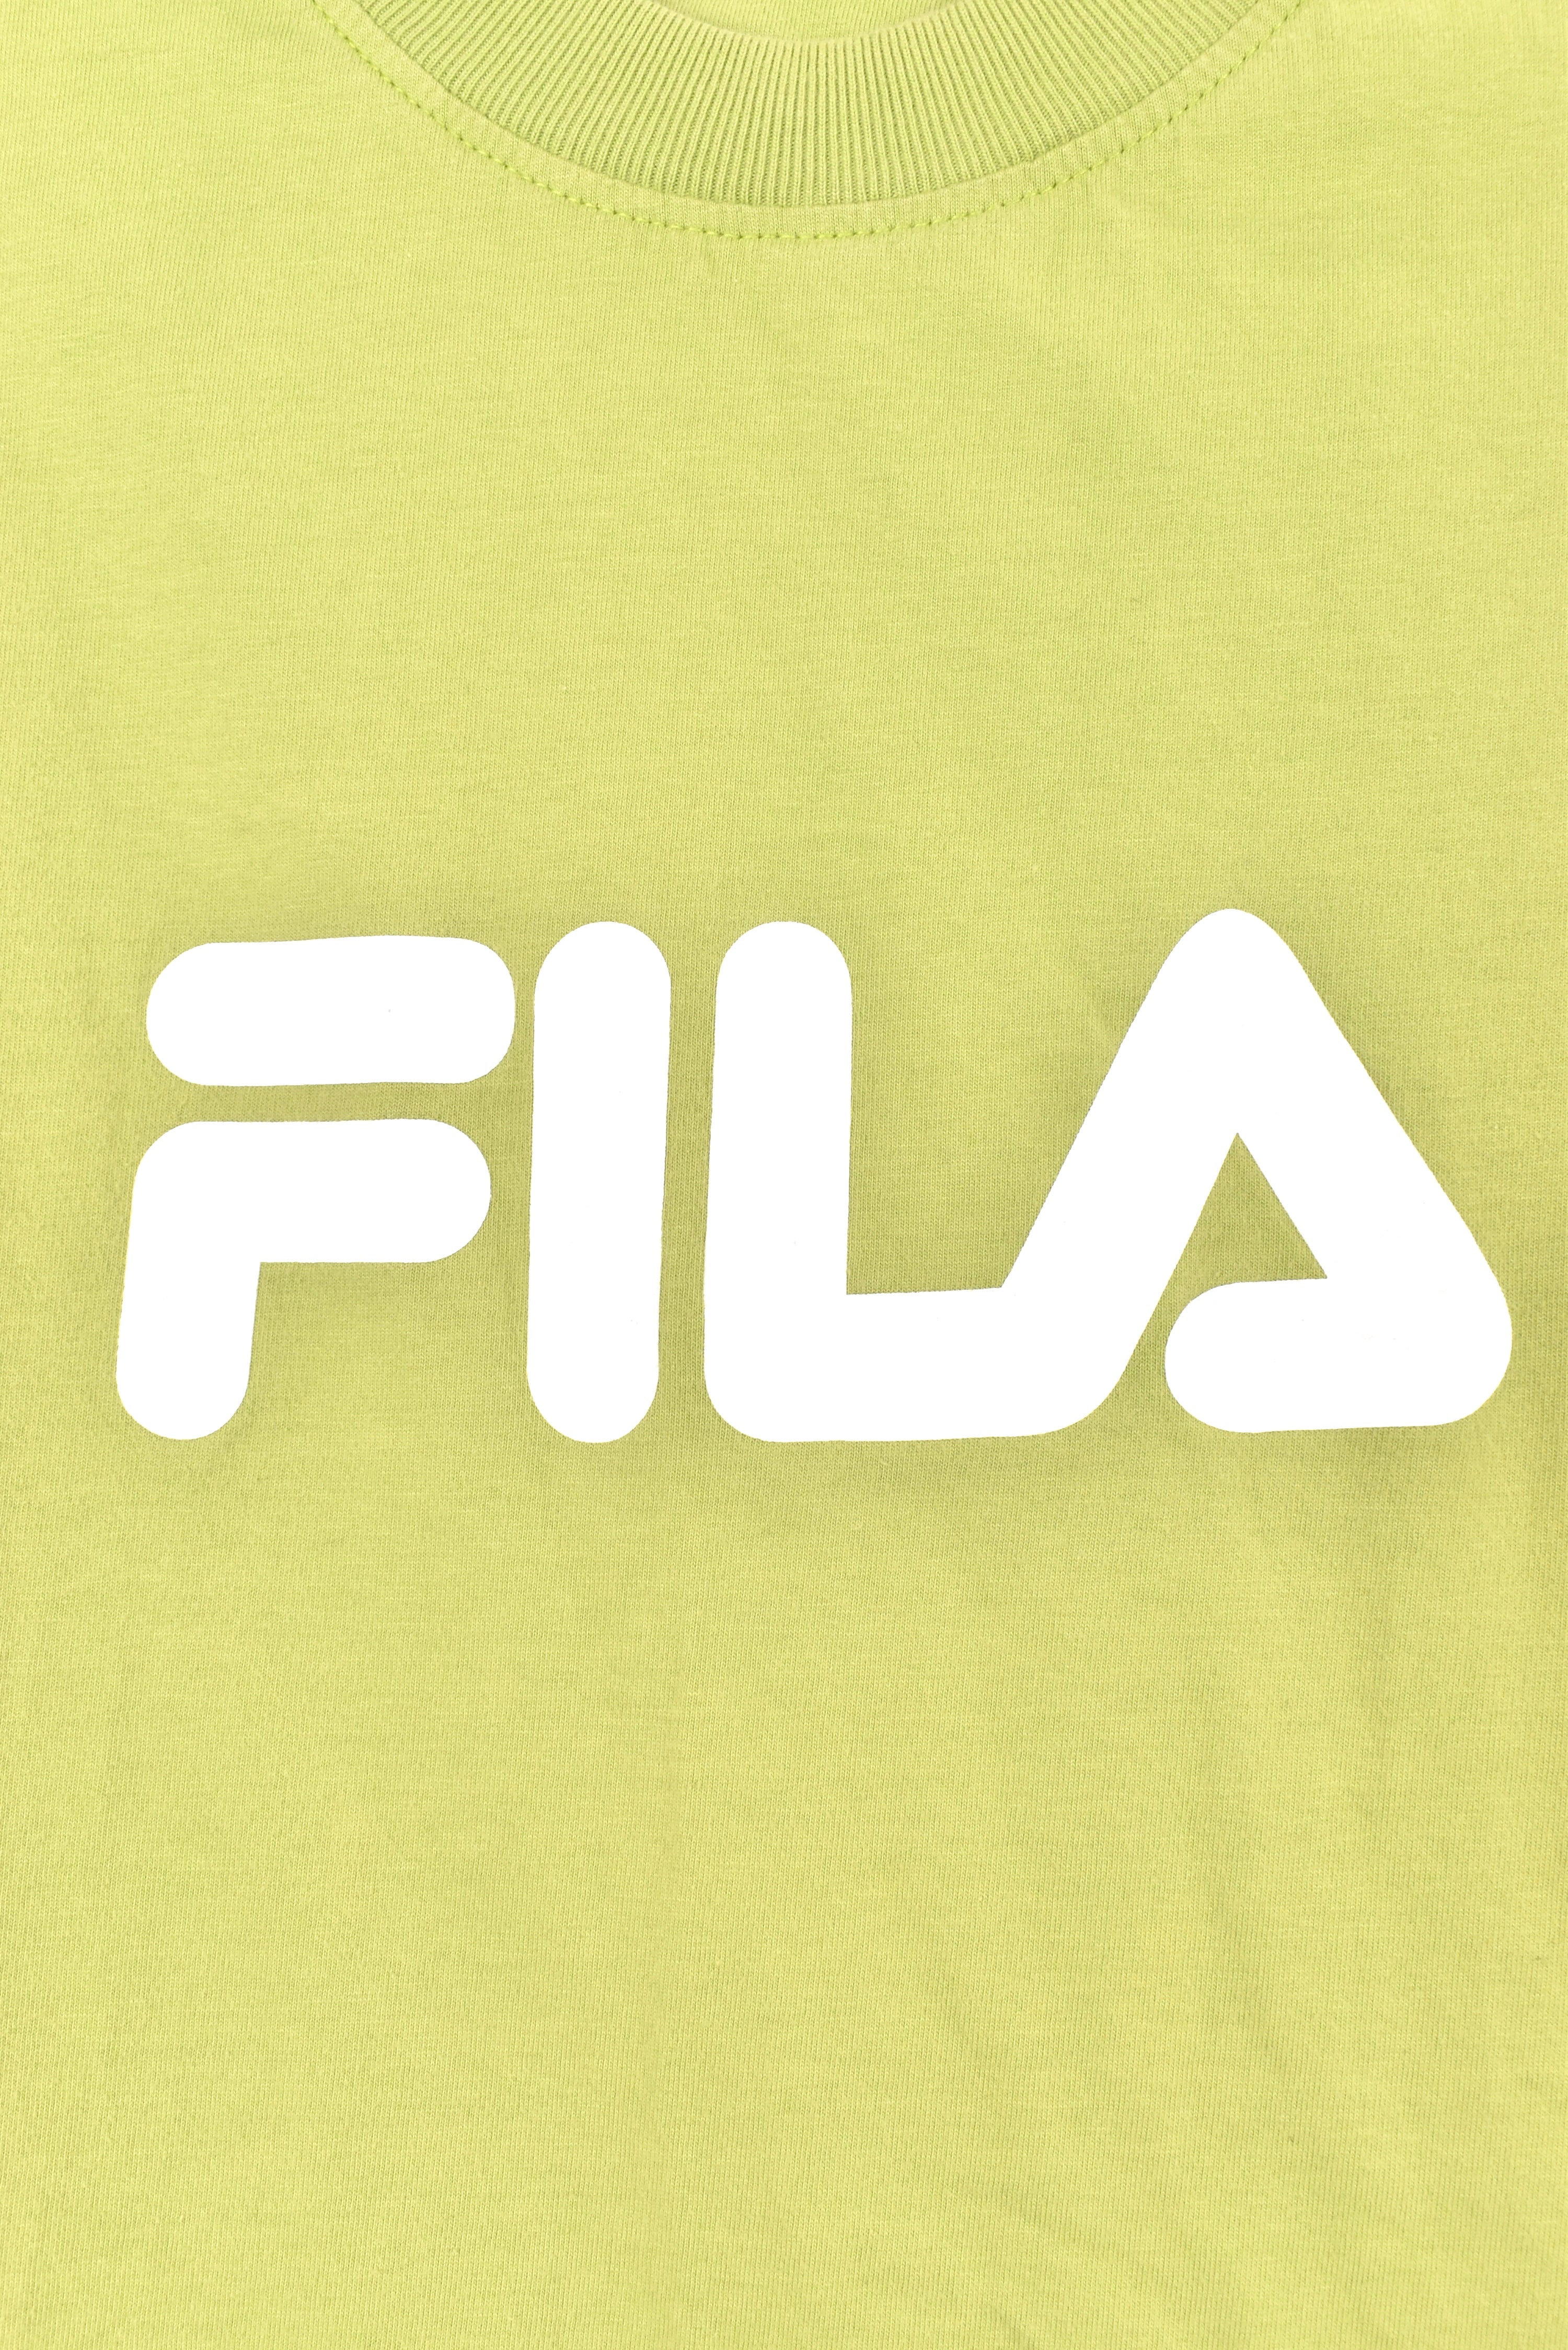 Vintage Fila shirt, green graphic tee - AU M FILA